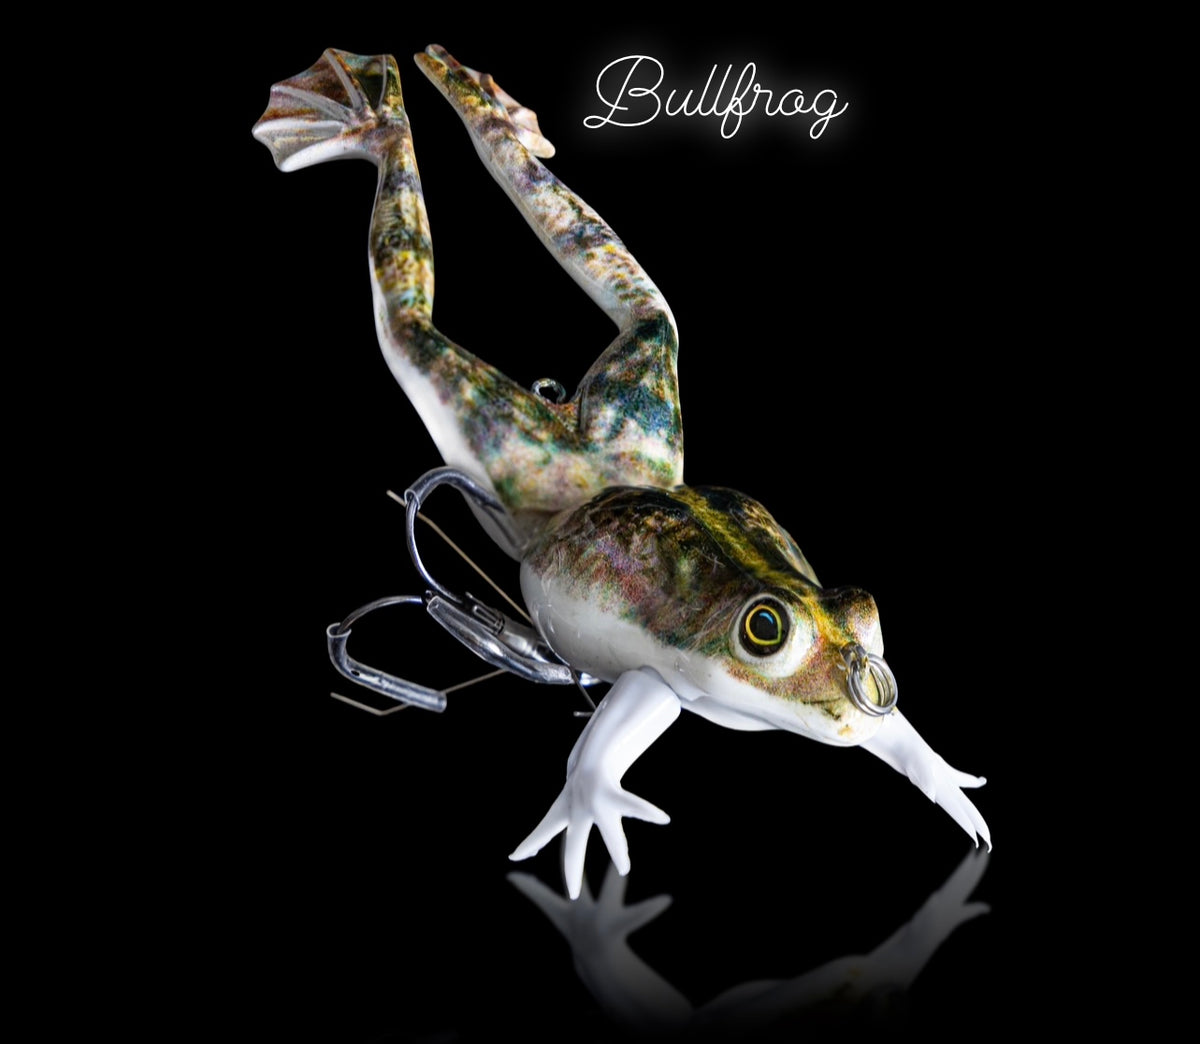 1) D&J Lures 1/2 Oz. Custom Frog Buzzbait (Bullfrog) Bass Fishing